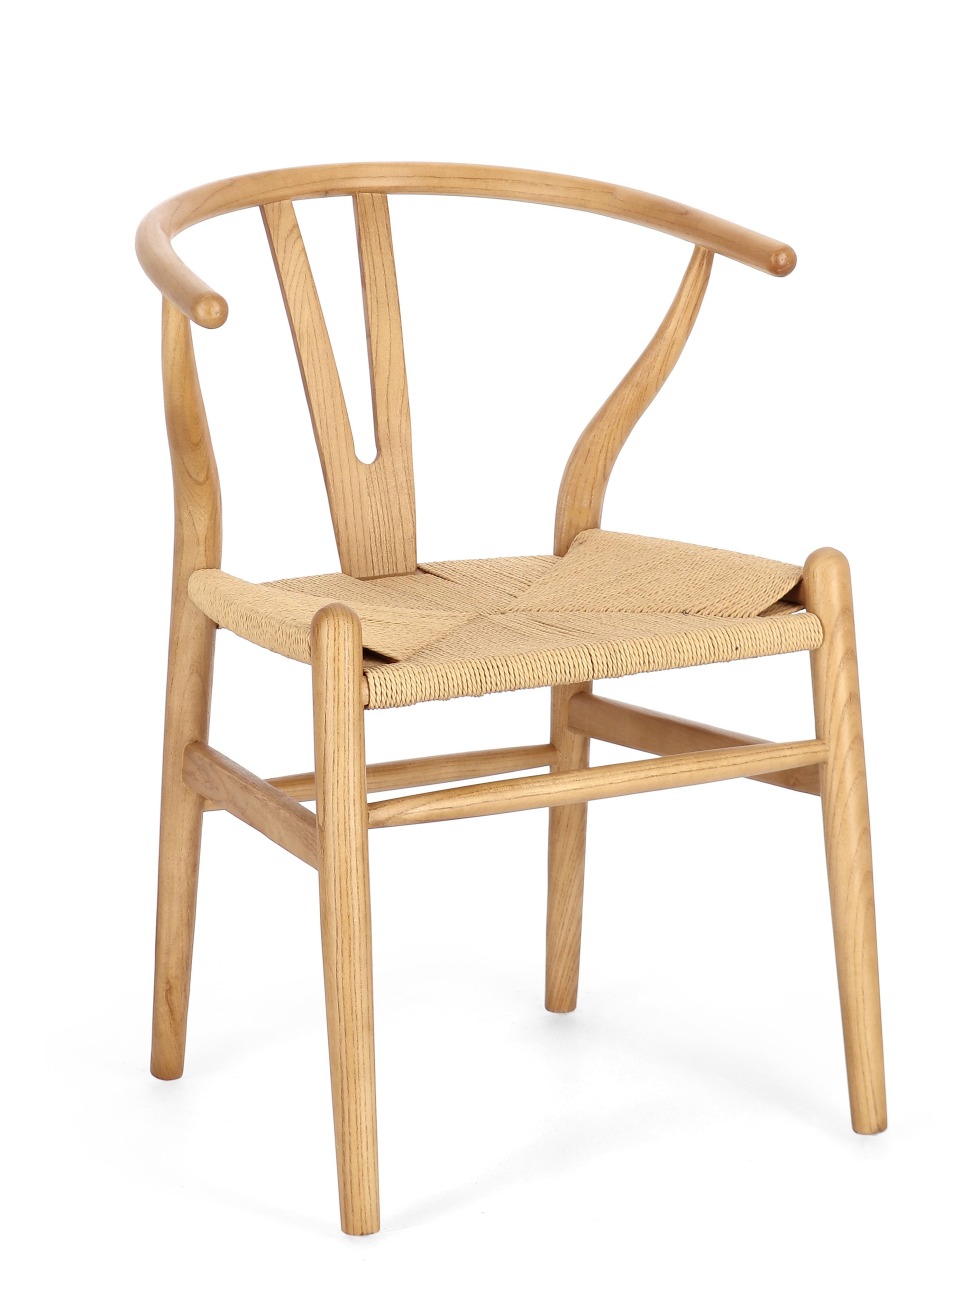 Der Esszimmerstuhl Artas überzeugt mit seinem modernen Stil. Gefertigt wurde er aus Seilen, welche einen natürlichen Farbton besitzt. Das Gestell ist aus Ulmenholz und hat ein natürliche Farbe. Der Stuhl besitzt eine Sitzhöhe von 46 cm.